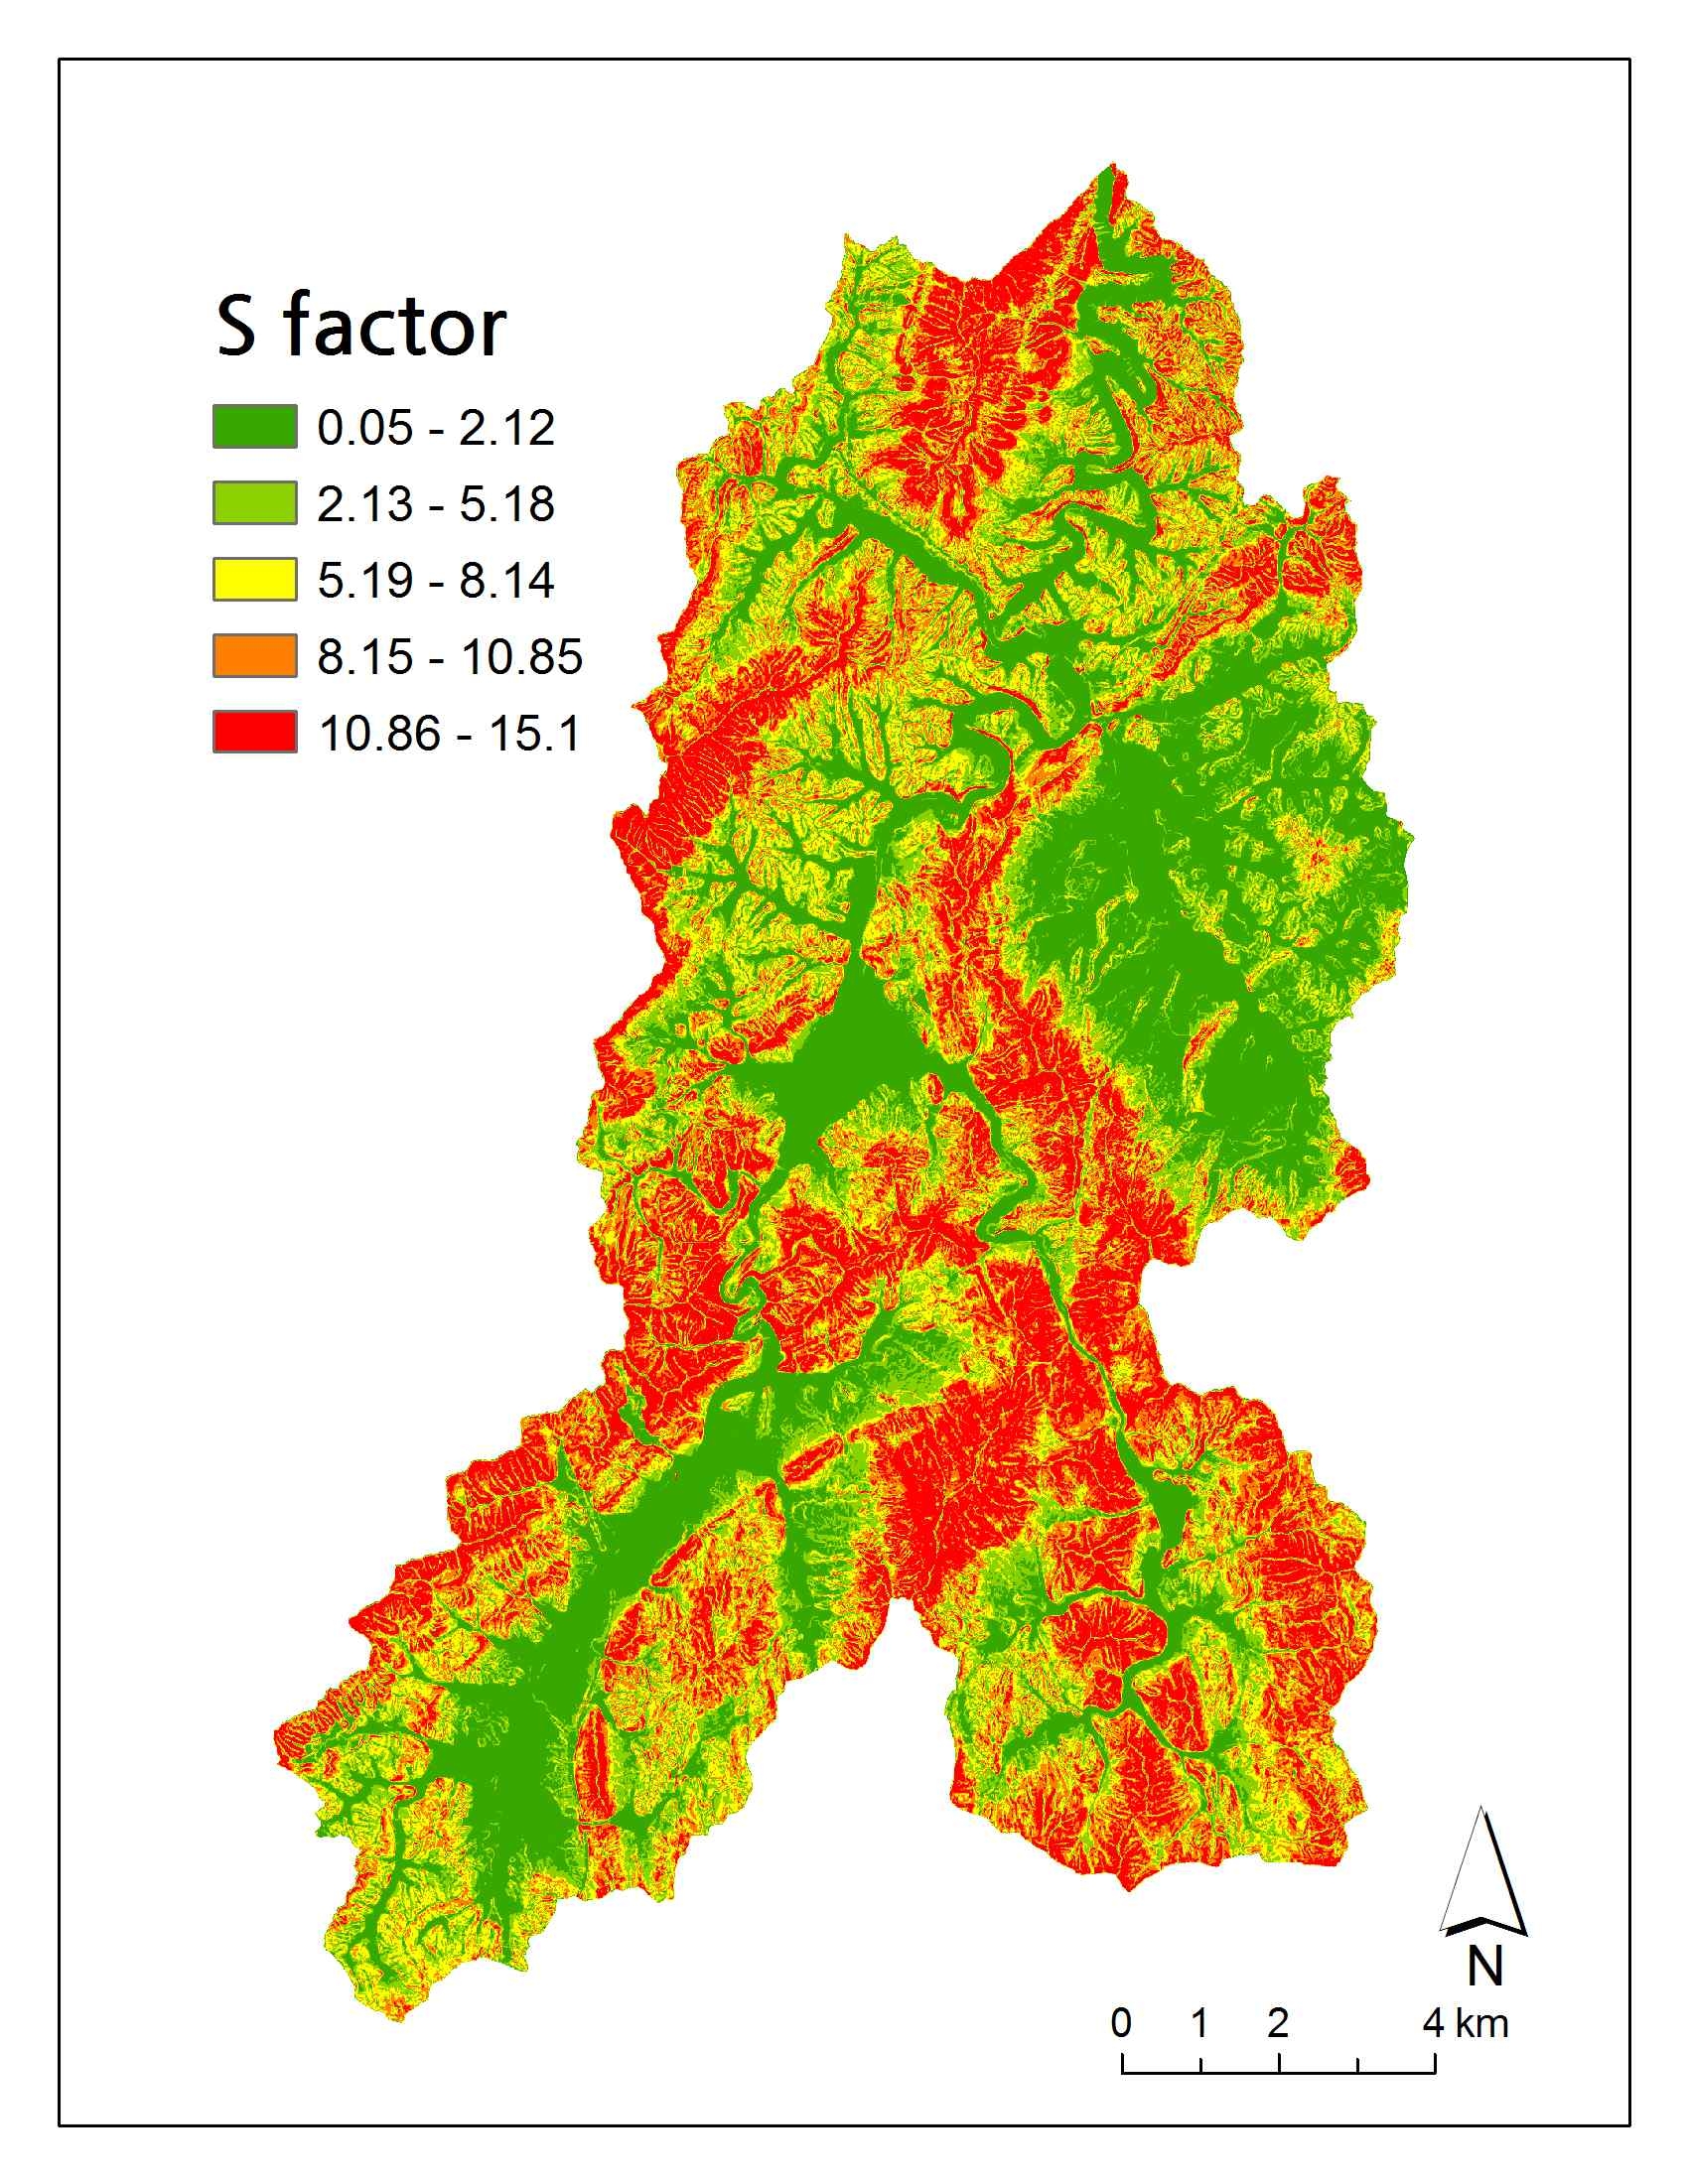 Slope factor(S) of soil erosion surface